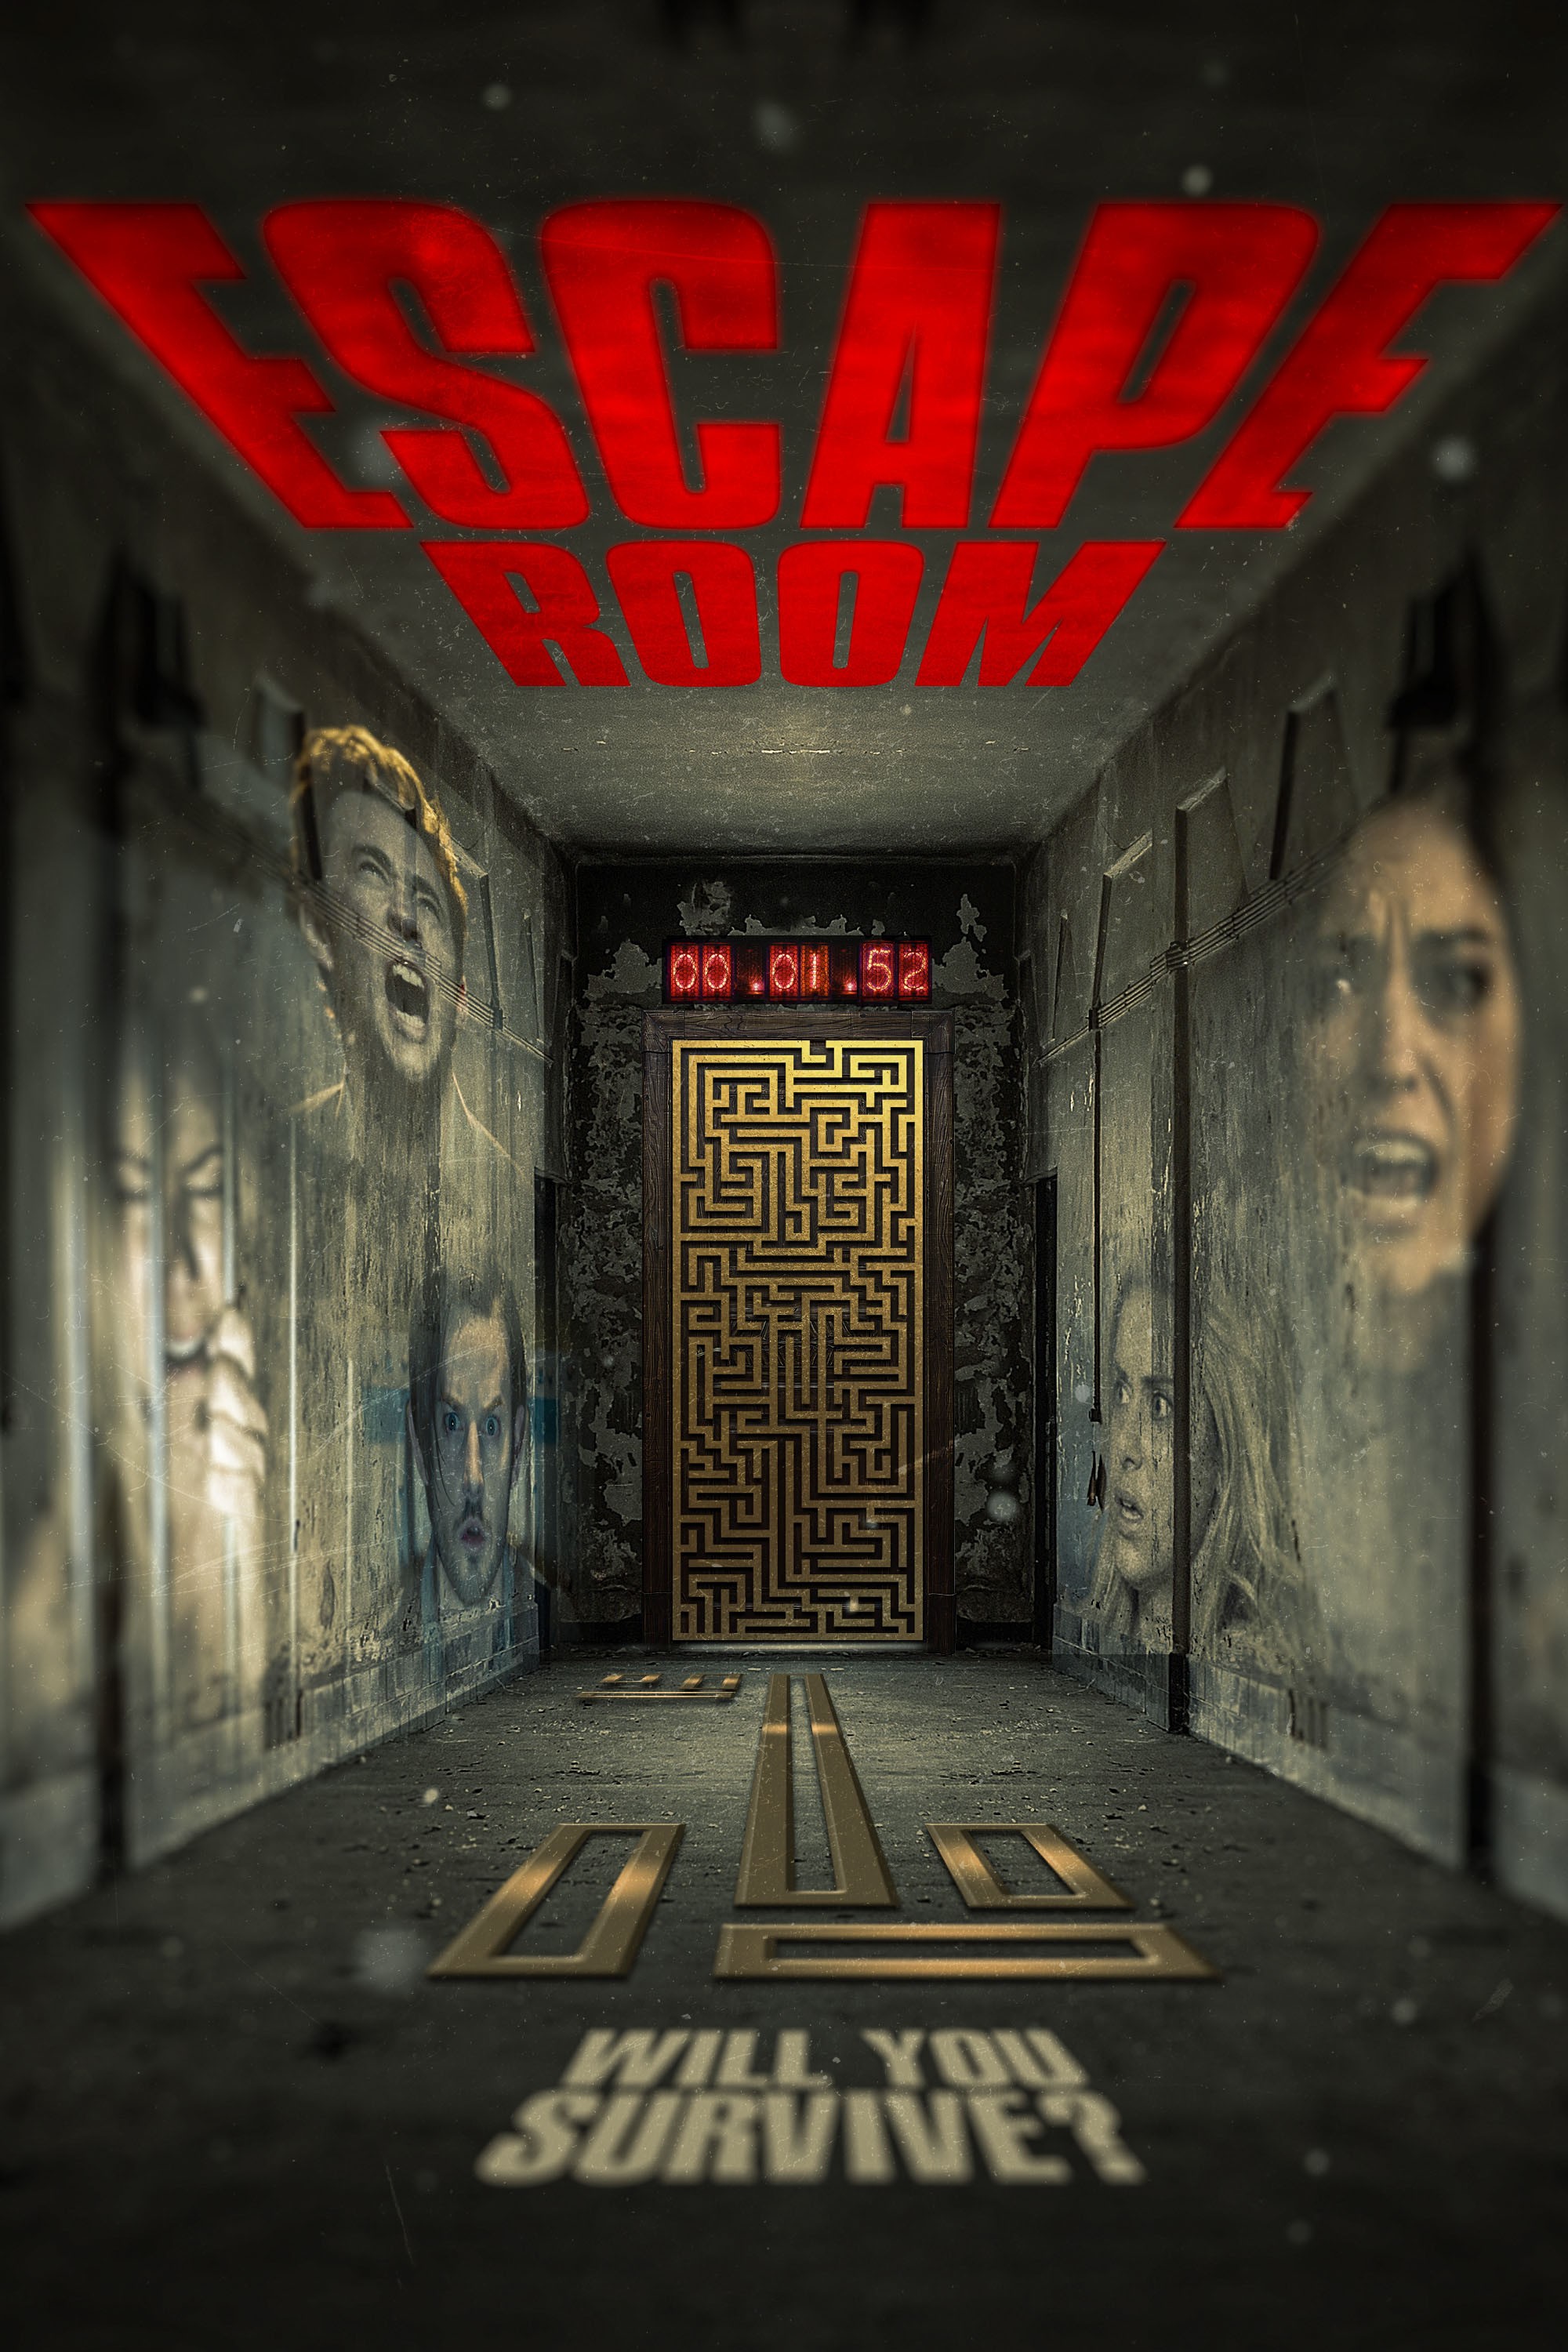 Escape Room - Rotten Tomatoes